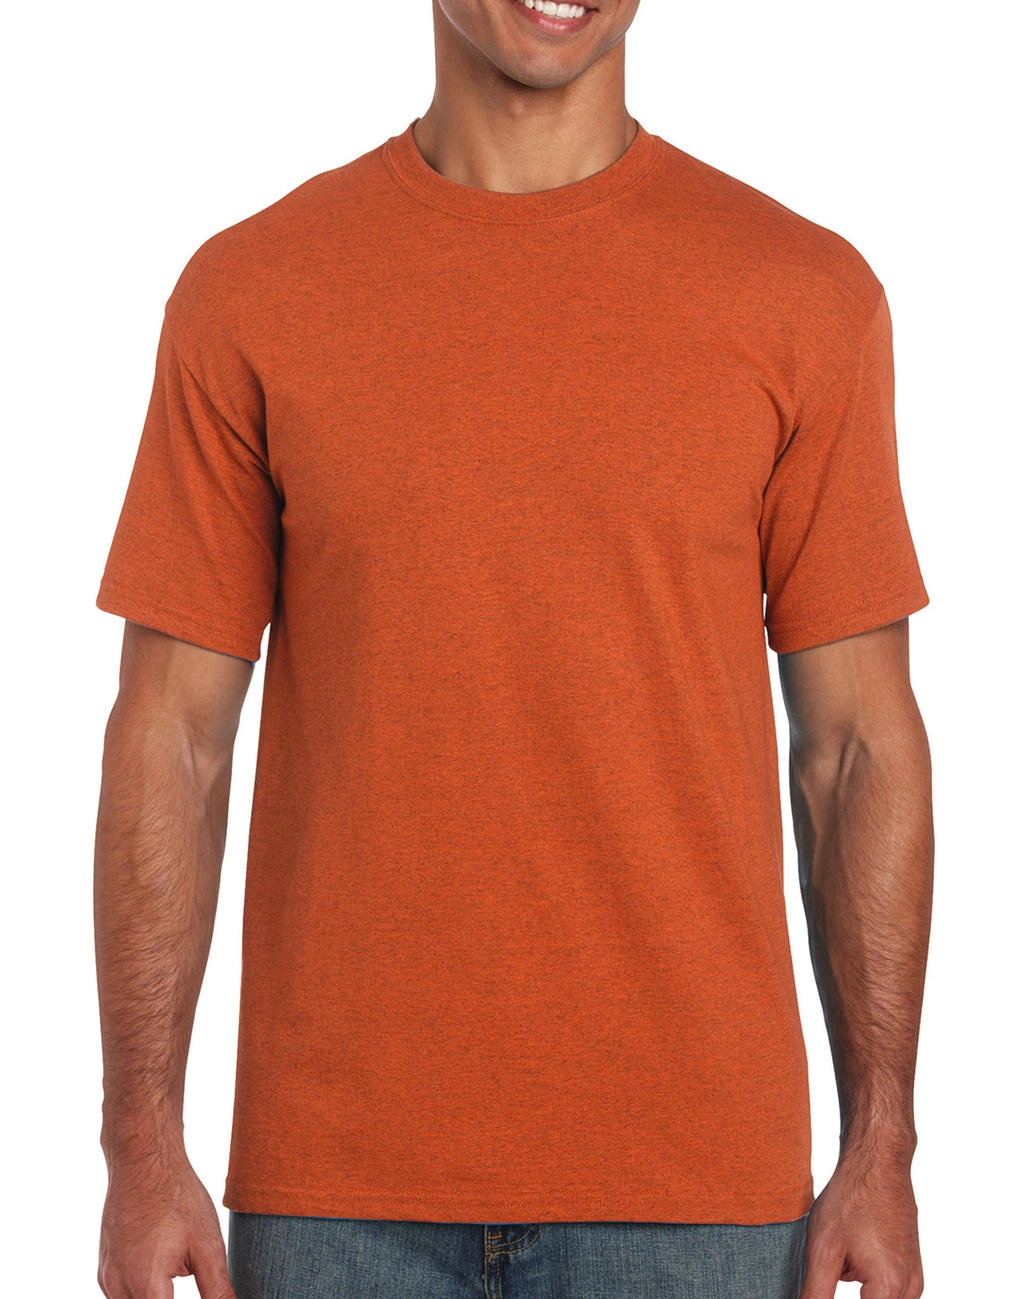 Heavy Cotton Adult T-Shirt zum Besticken und Bedrucken in der Farbe Antique Orange mit Ihren Logo, Schriftzug oder Motiv.